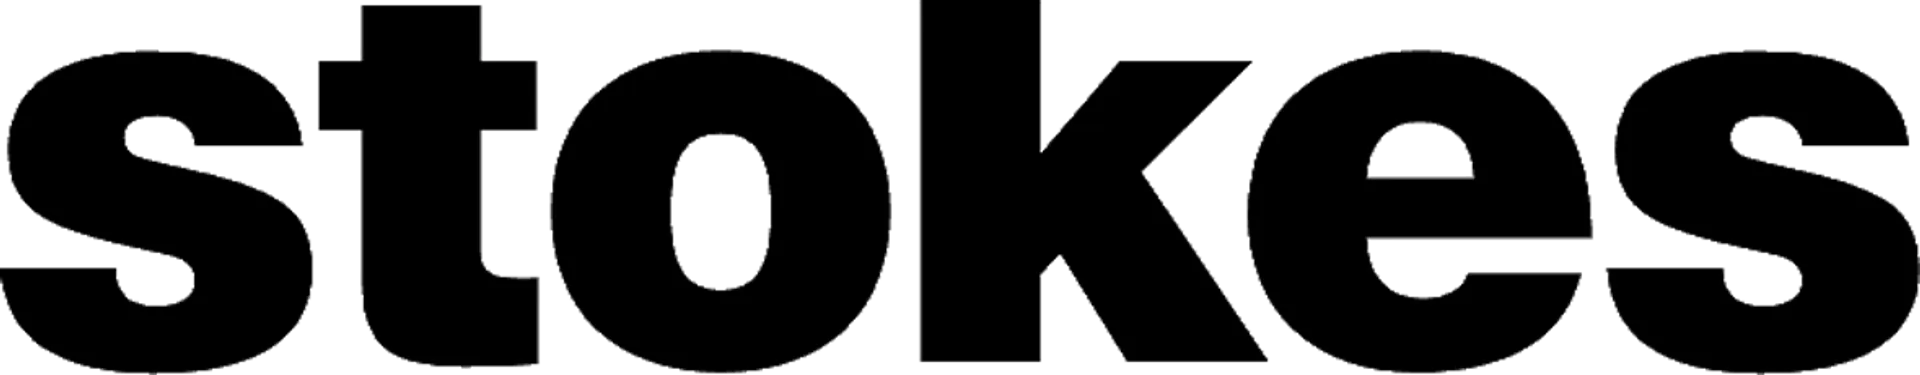 STOKES logo de circulaire